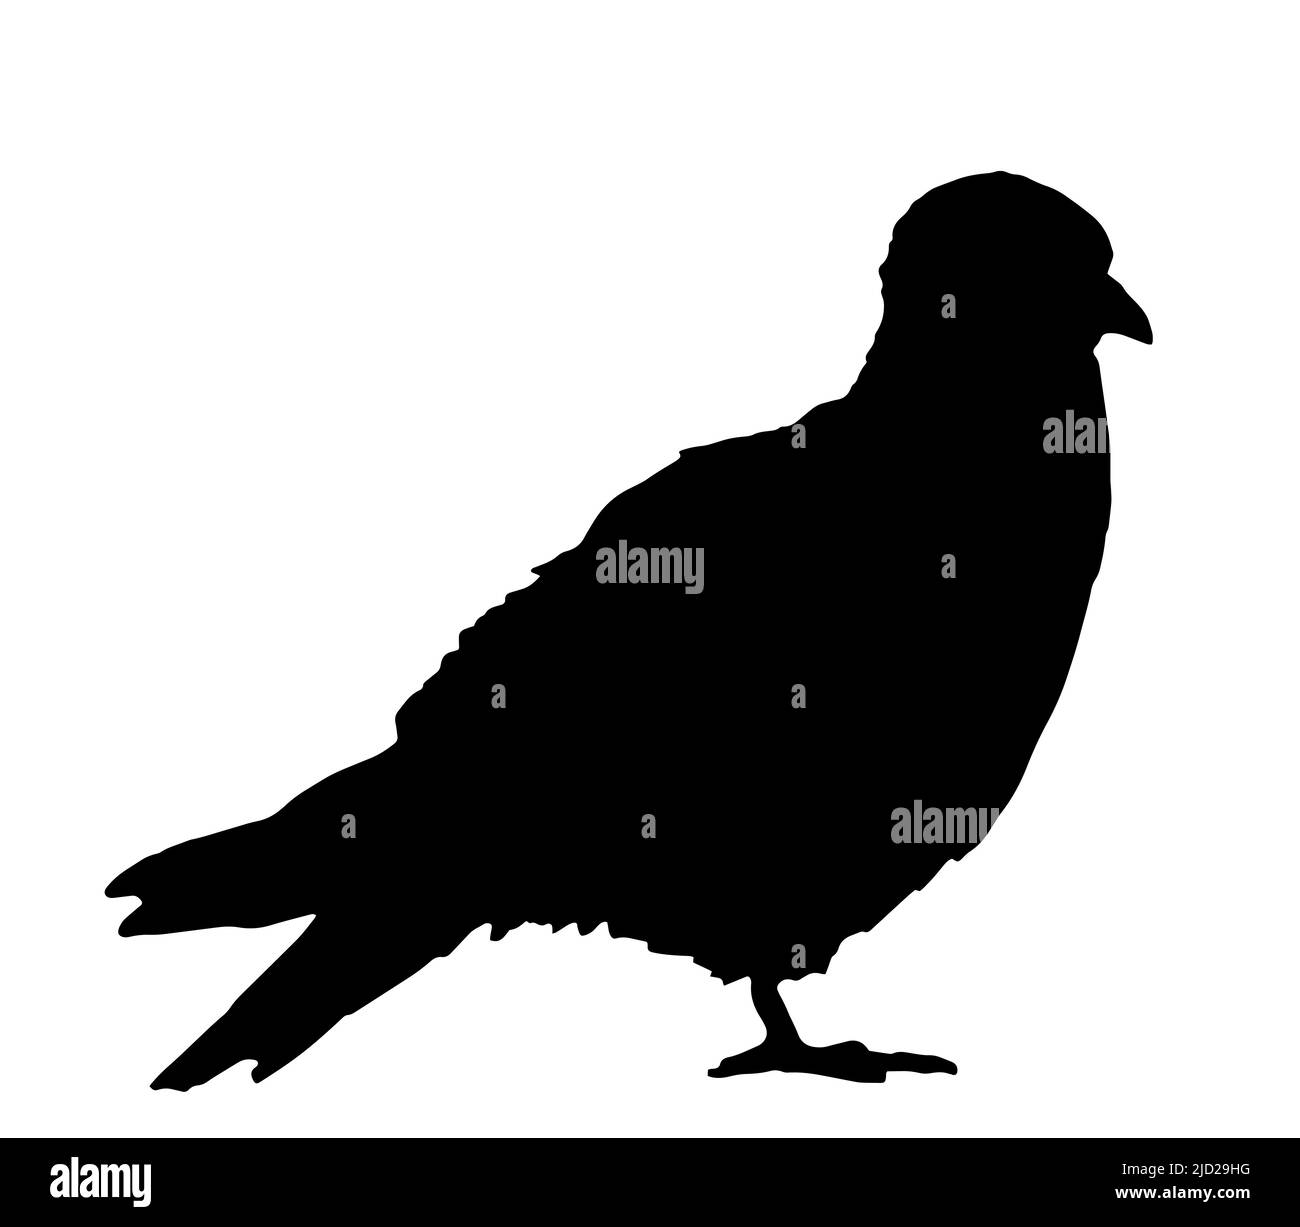 Taubenvögel, Silhouette schwarz auf weiß Stock Vektor